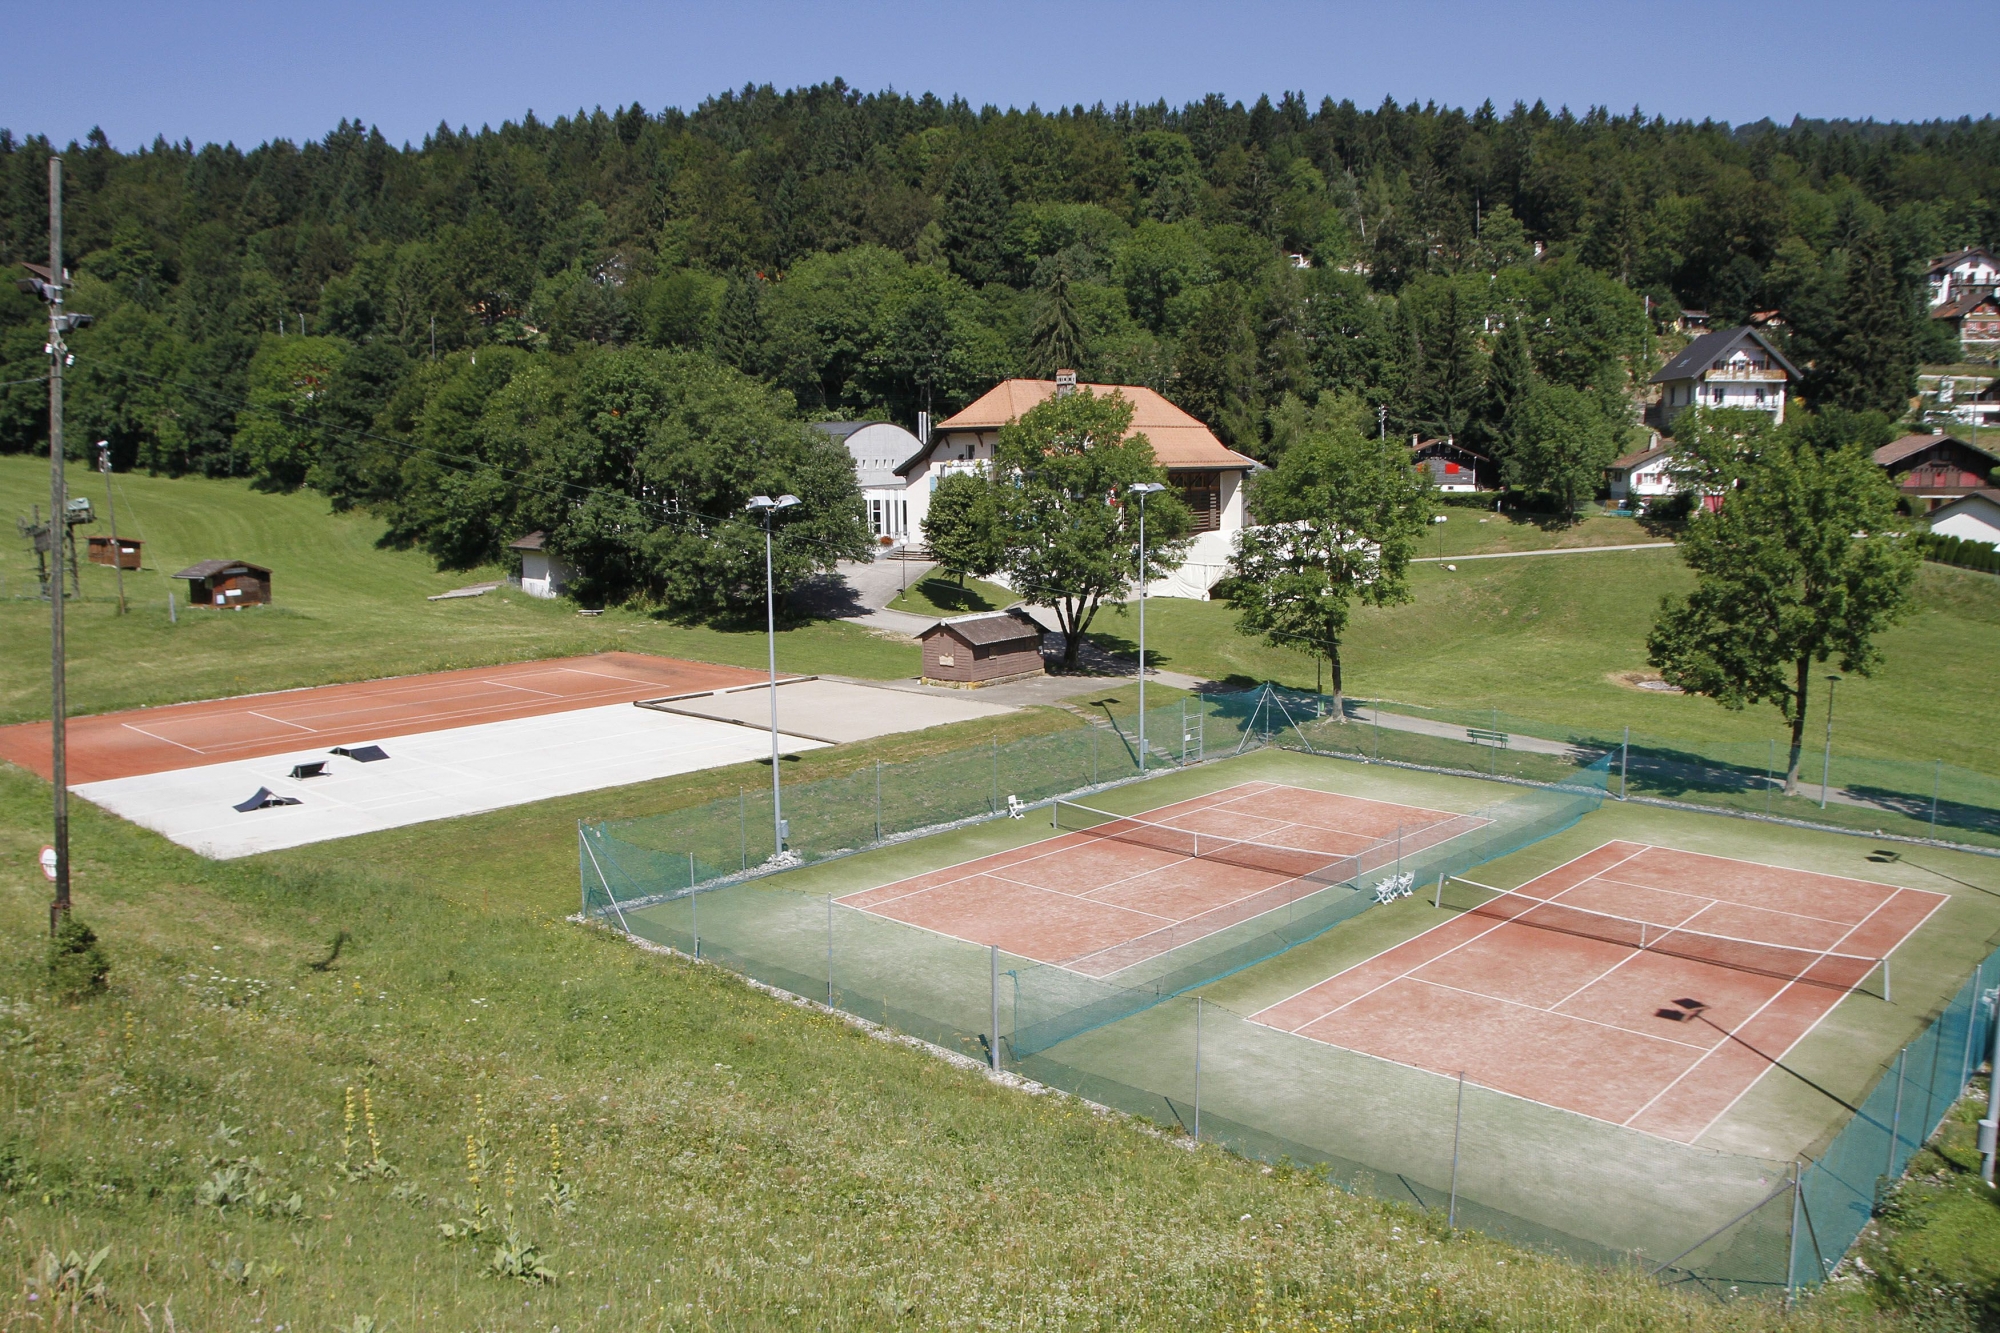 La patinoire provisoire sera installée sur les tennis. Elle sera démontée à la fin de chaque hiver.